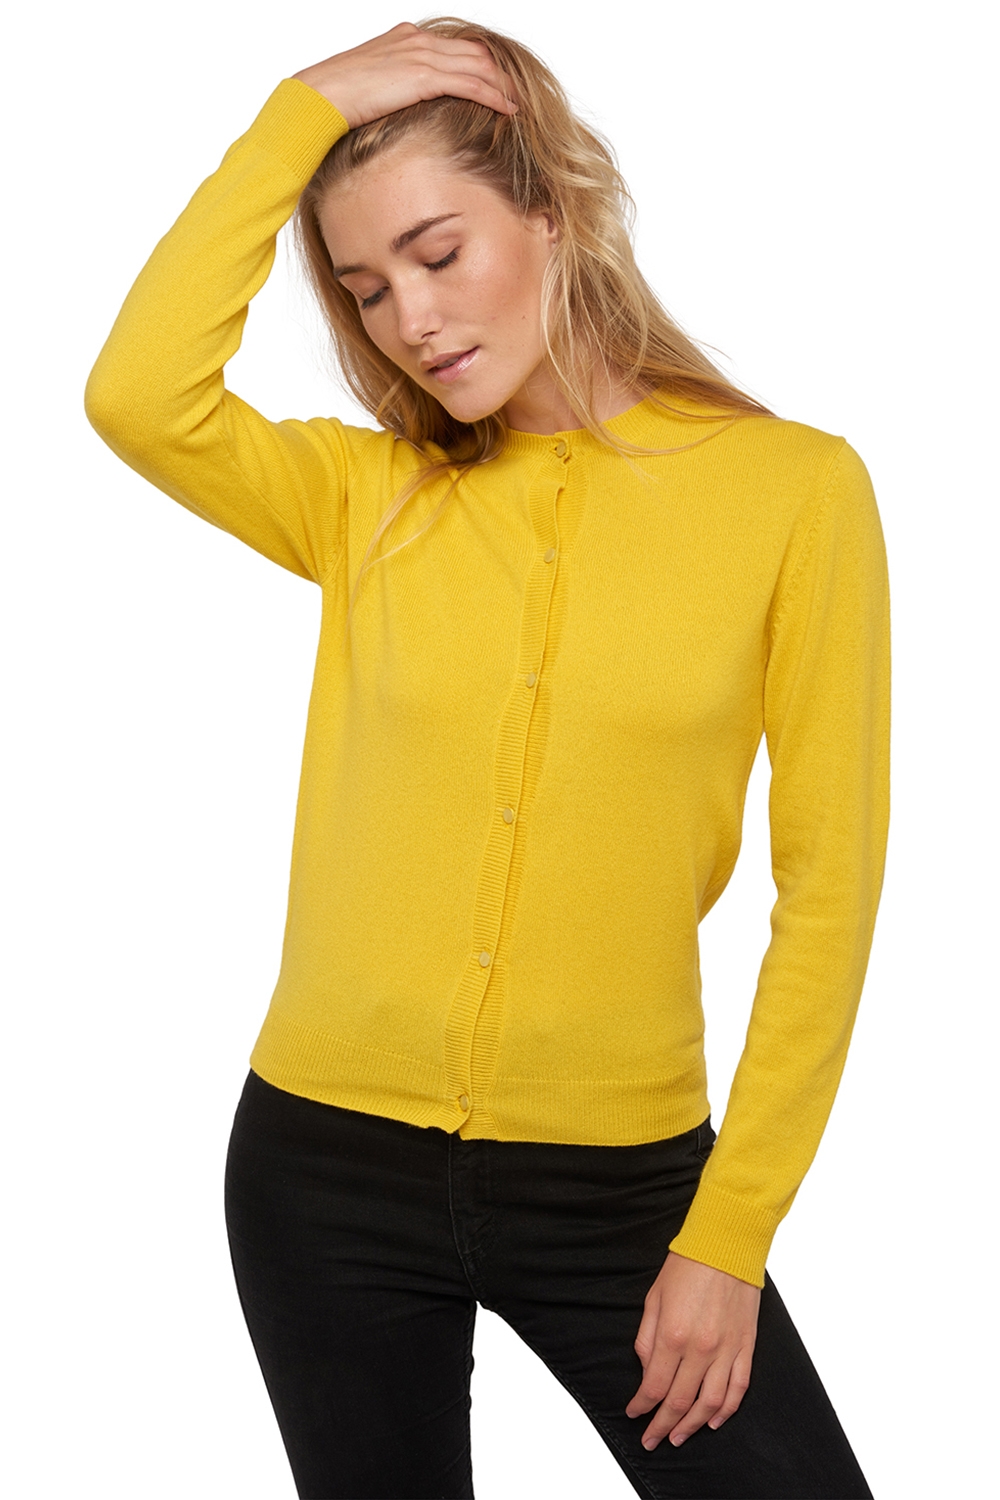 Kasjmier dames kasjmier basic pullovers voor lage prijzen tyra first sunny yellow m